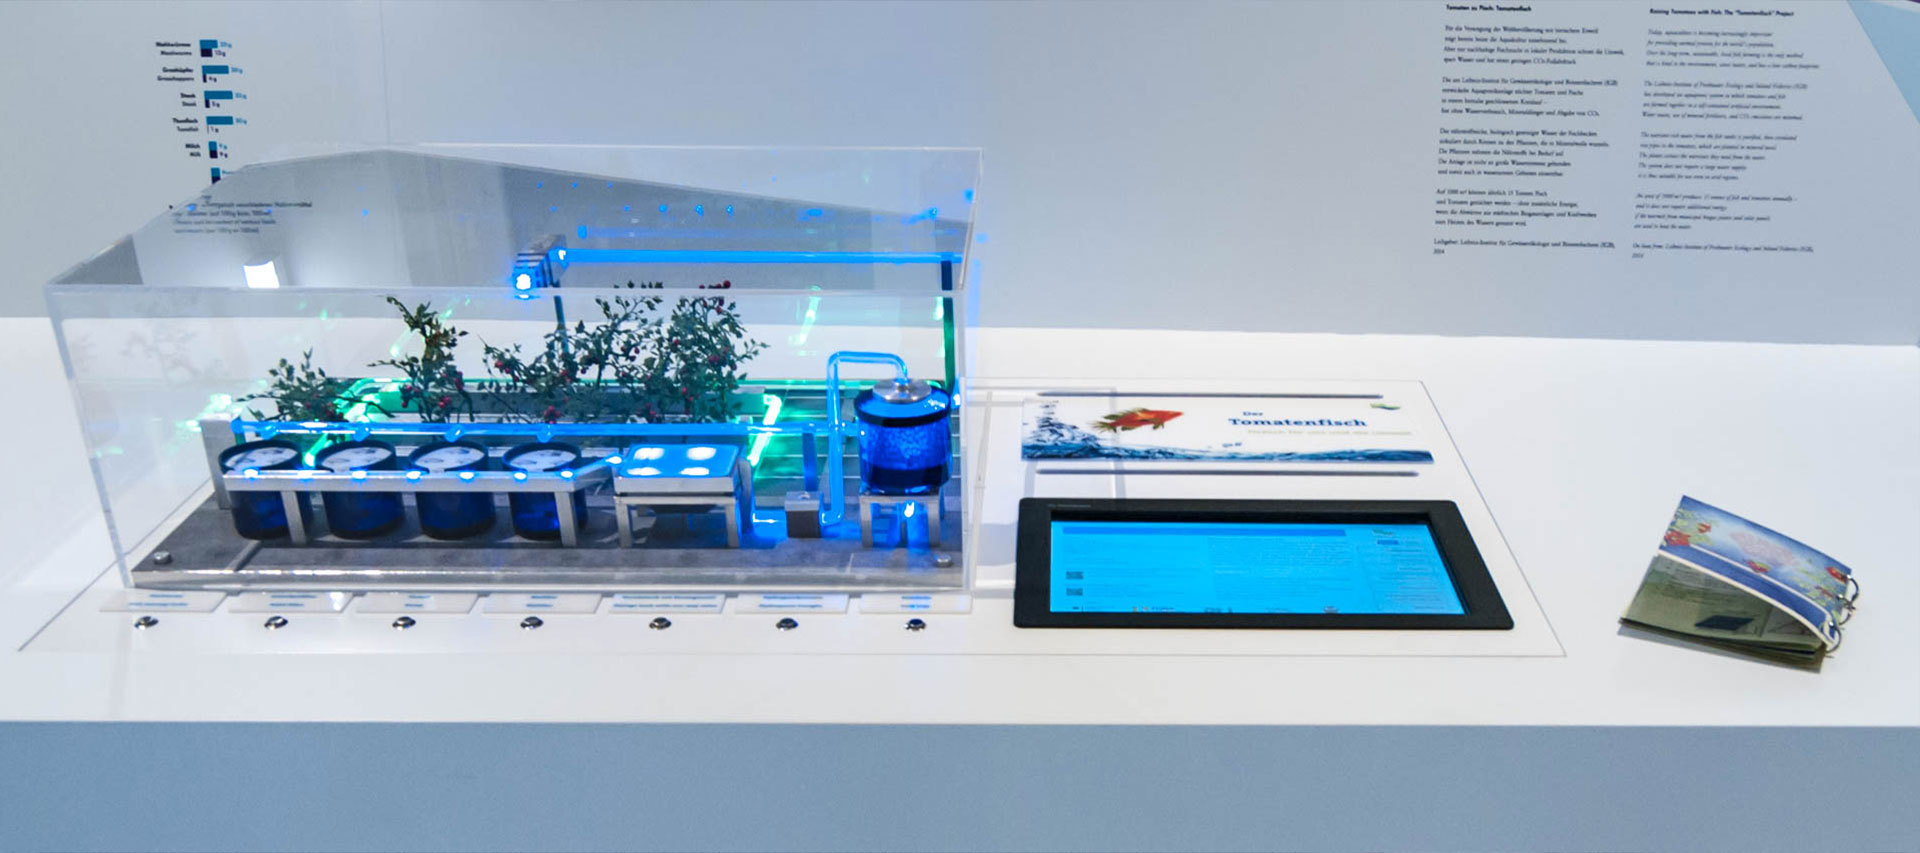 Interaktives Modell einer Aquaponic-Anlage des IGB Berlin (Tomatenfisch) im Deutschen Museum